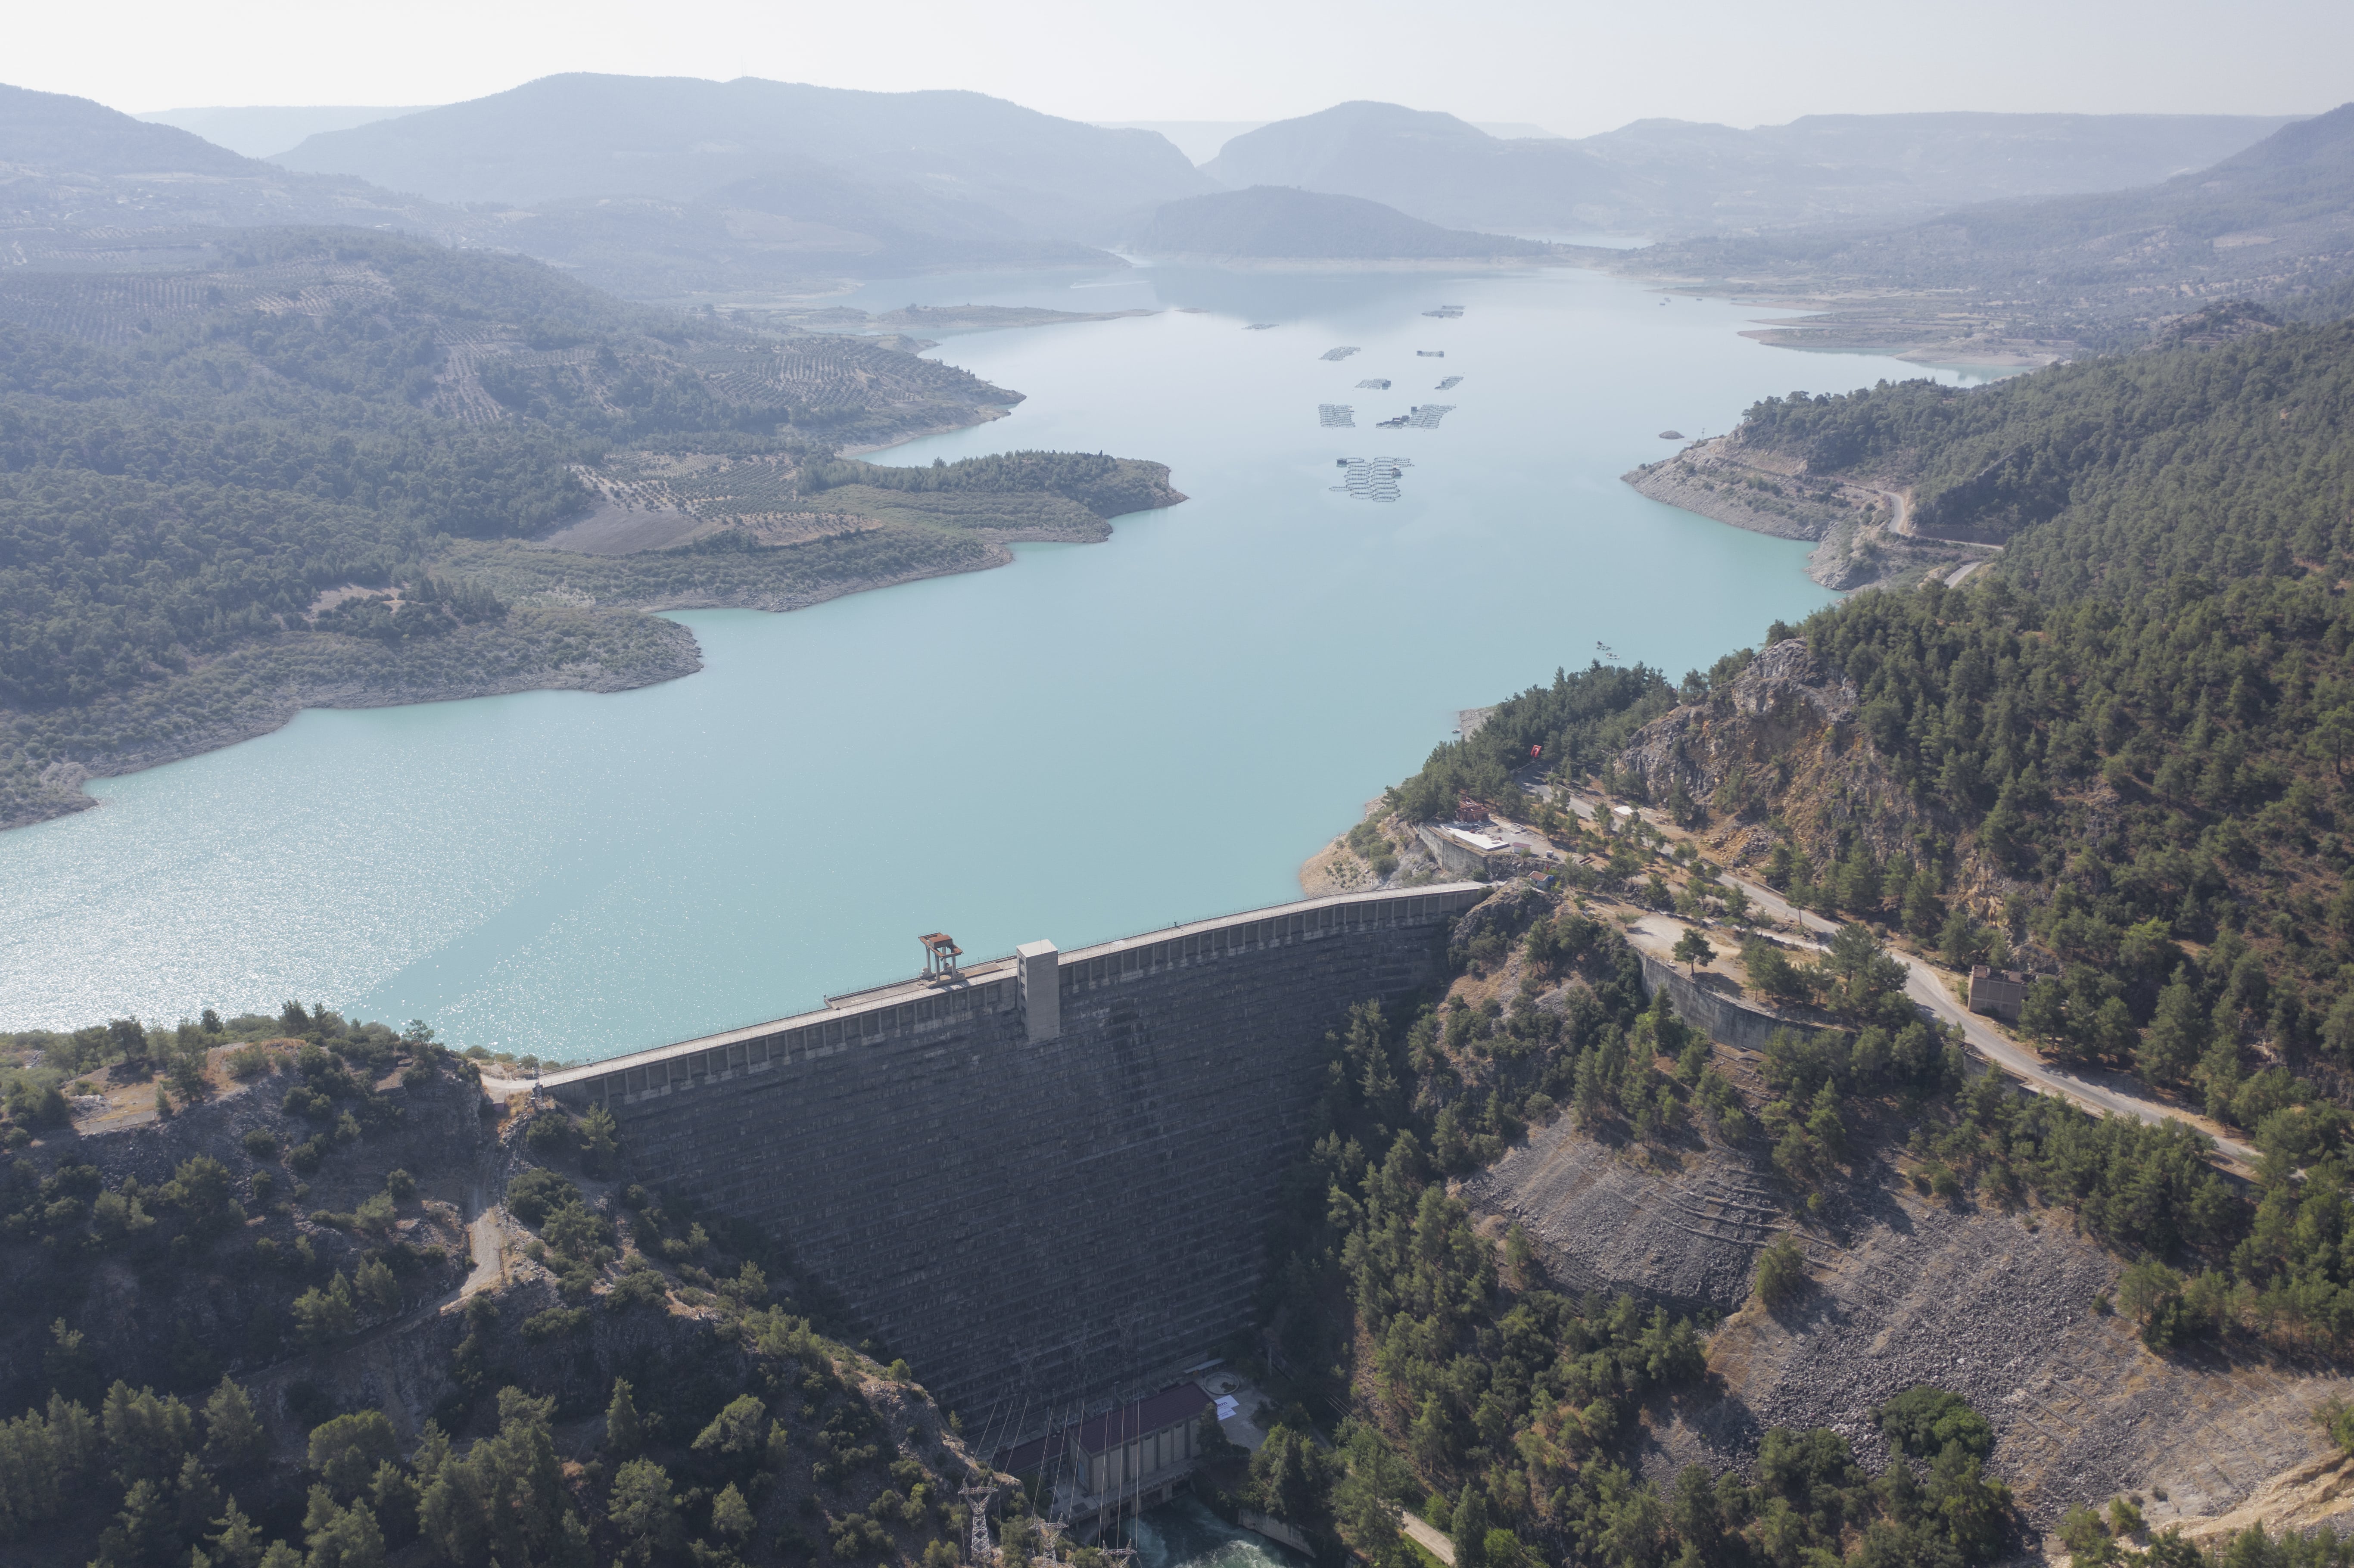 Hidroelektrik Santrali